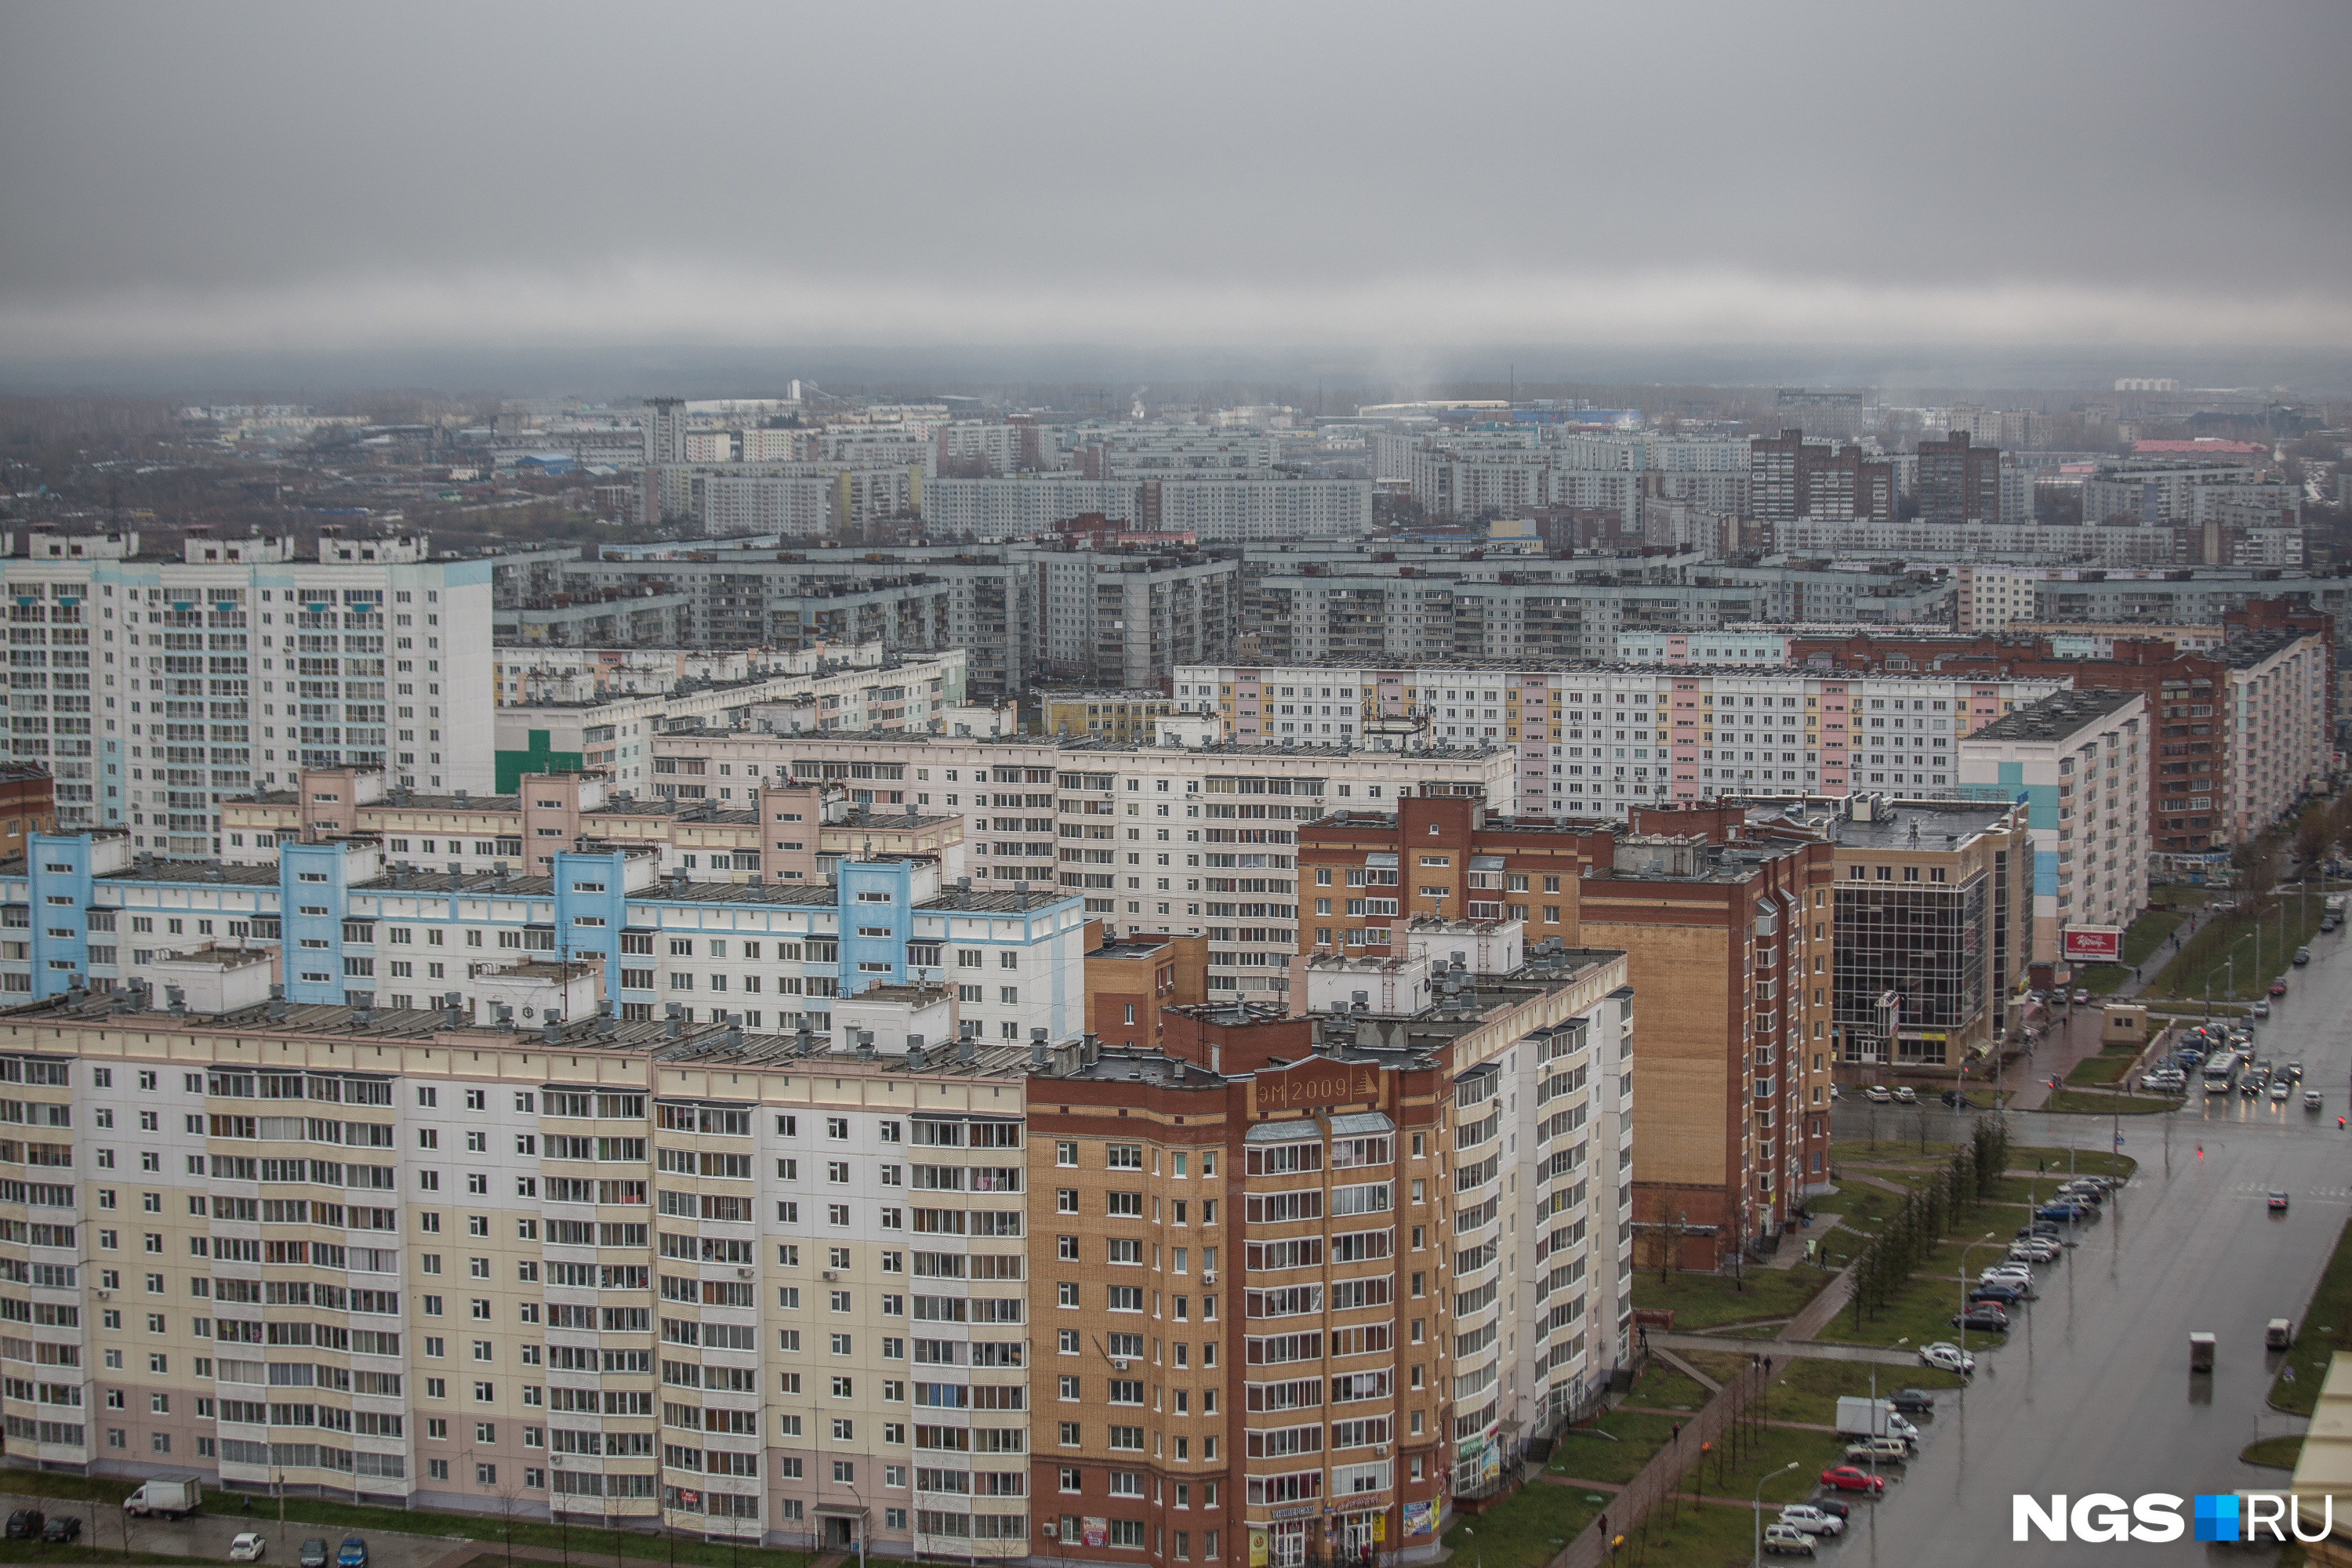 Аренда недвижимости в новосибирске. НГС недвижимость Новосибирск. Фото недвижимости Новосибирск сверху.